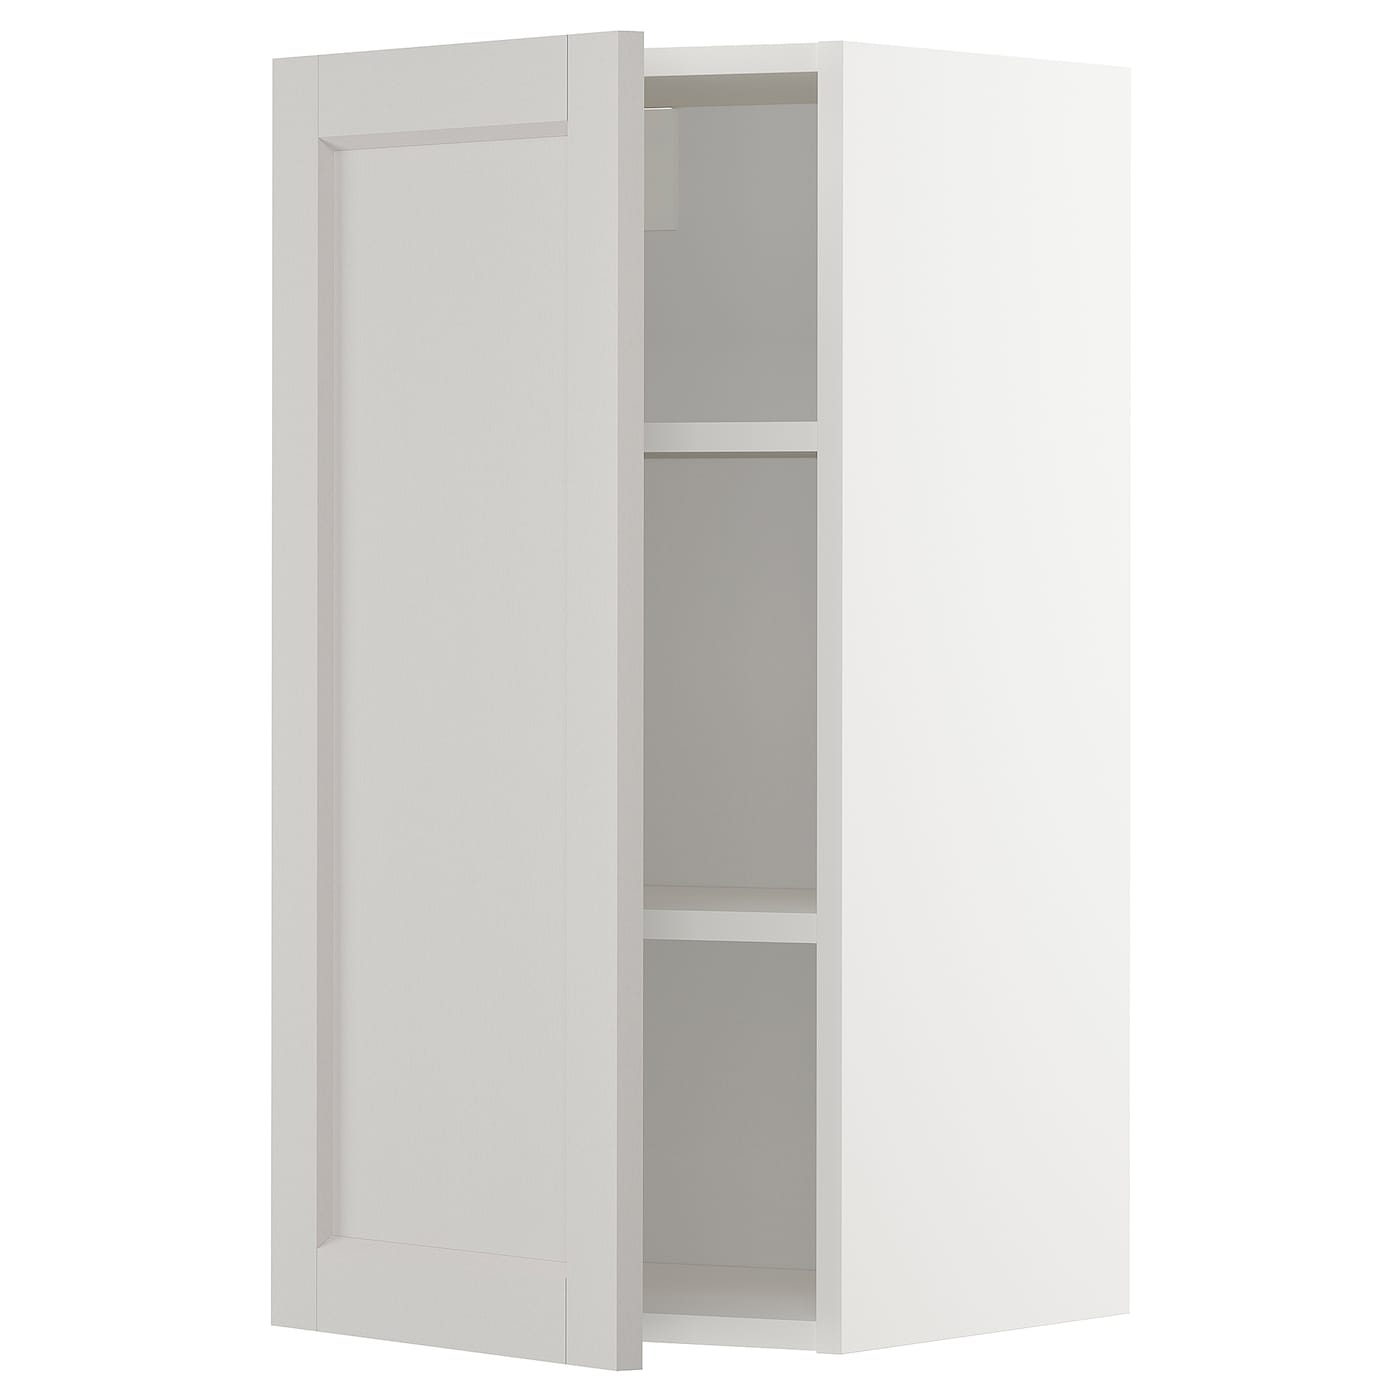 Навесной шкаф с полкой - METOD IKEA/ МЕТОД ИКЕА, 80х60 см, белый/светло-серый